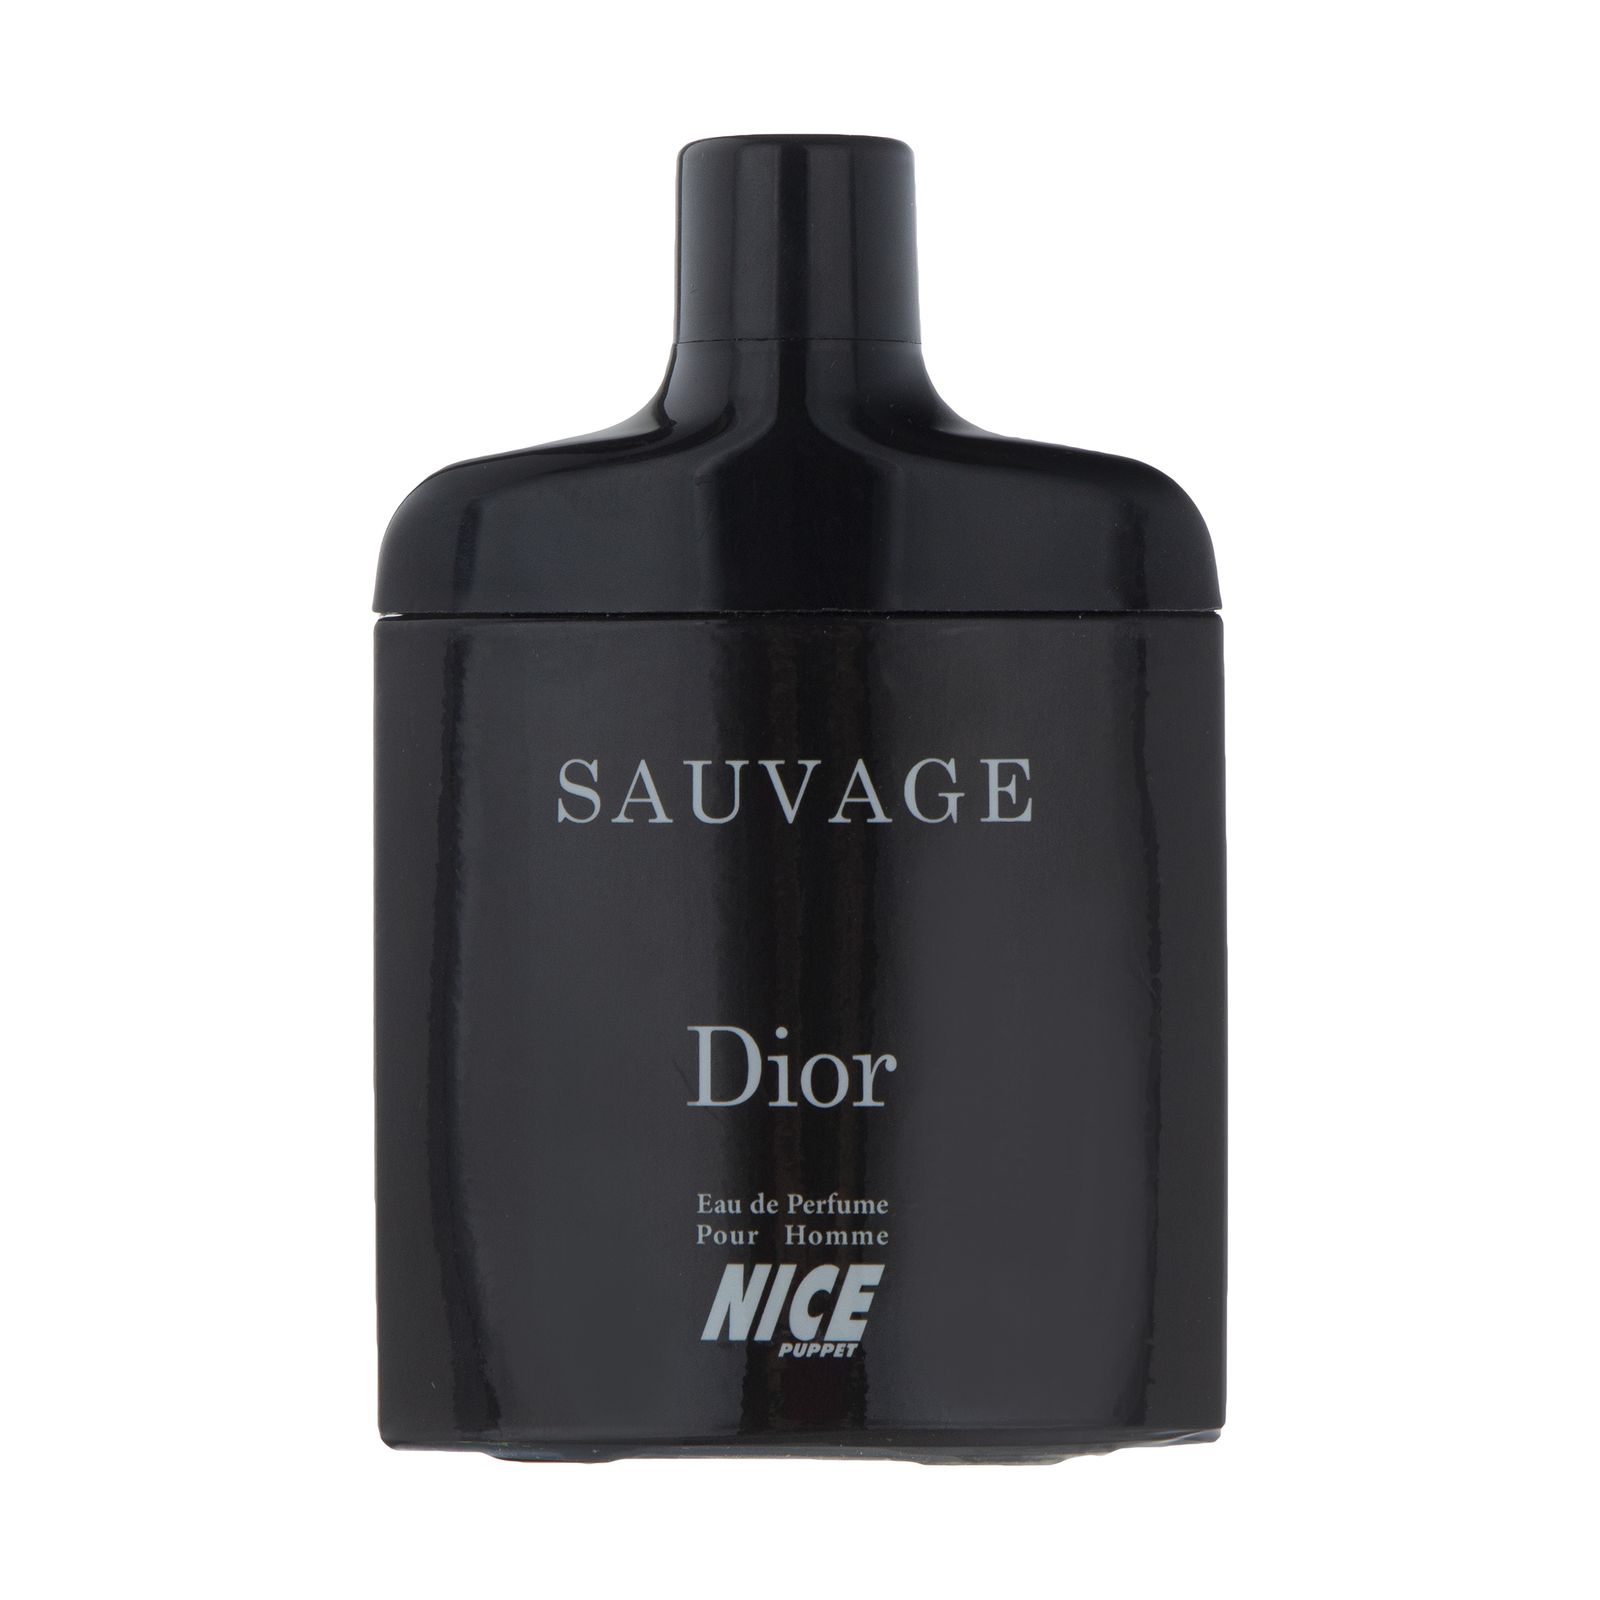 ادوپرفیوم مردانه نایس پاپت مدل Sauvage Dior حجم 85 میلی لیتر  -  - 1